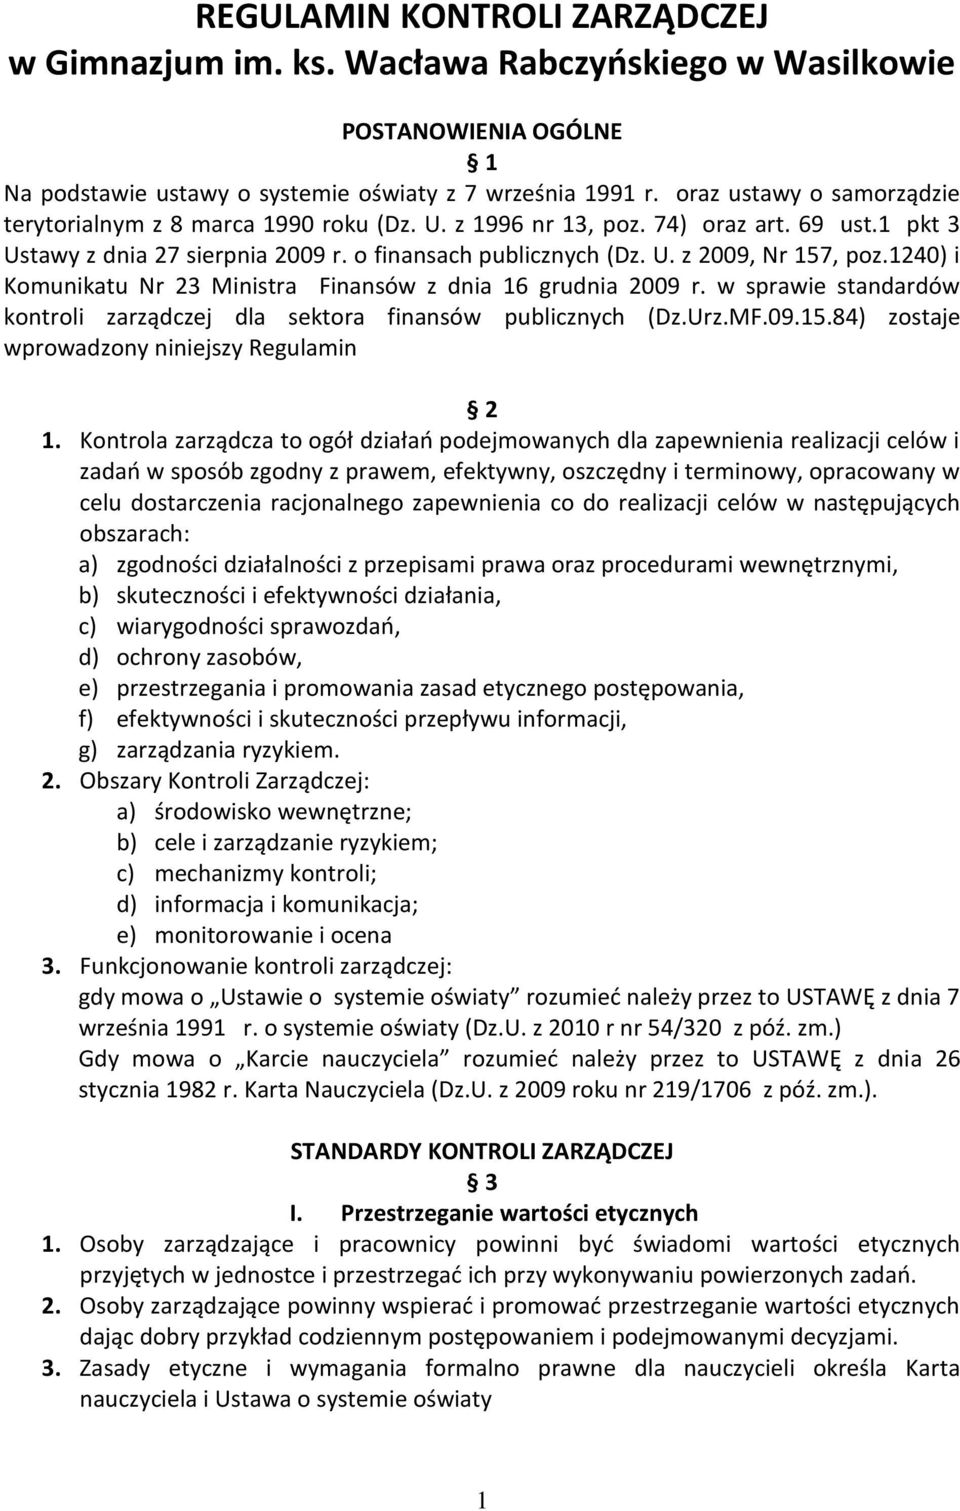 1240) i Komunikatu Nr 23 Ministra Finansów z dnia 16 grudnia 2009 r. w sprawie standardów kontroli zarządczej dla sektora finansów publicznych (Dz.Urz.MF.09.15.